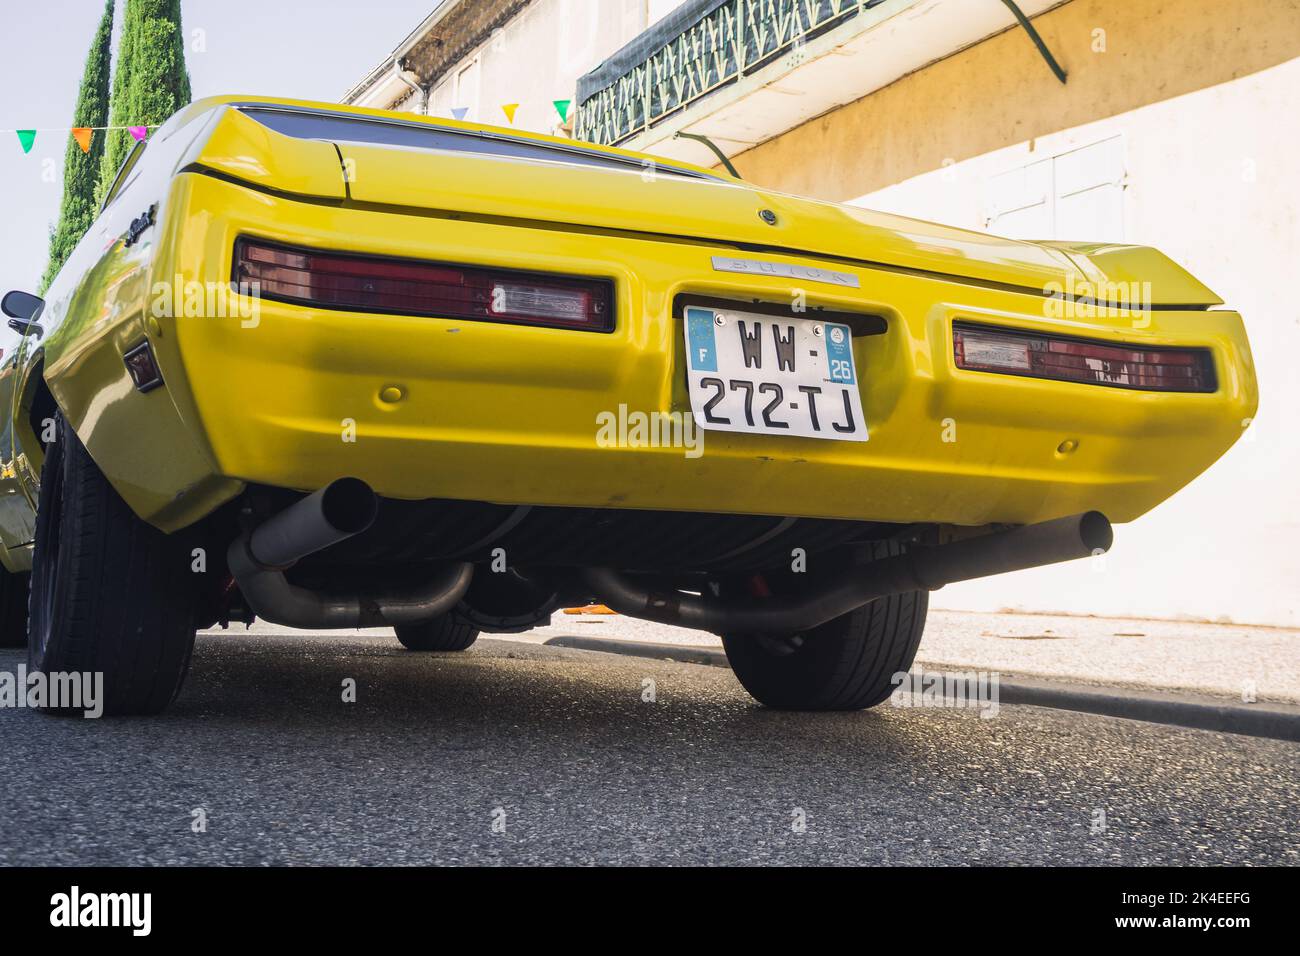 Loriol sur Drome, Frankreich - 17. September 2022: Buick Skylark, Vintage gelb, auf der Straße. Oldtimer-Ausstellung in Loriol sur Drome, Frankreich. Stockfoto